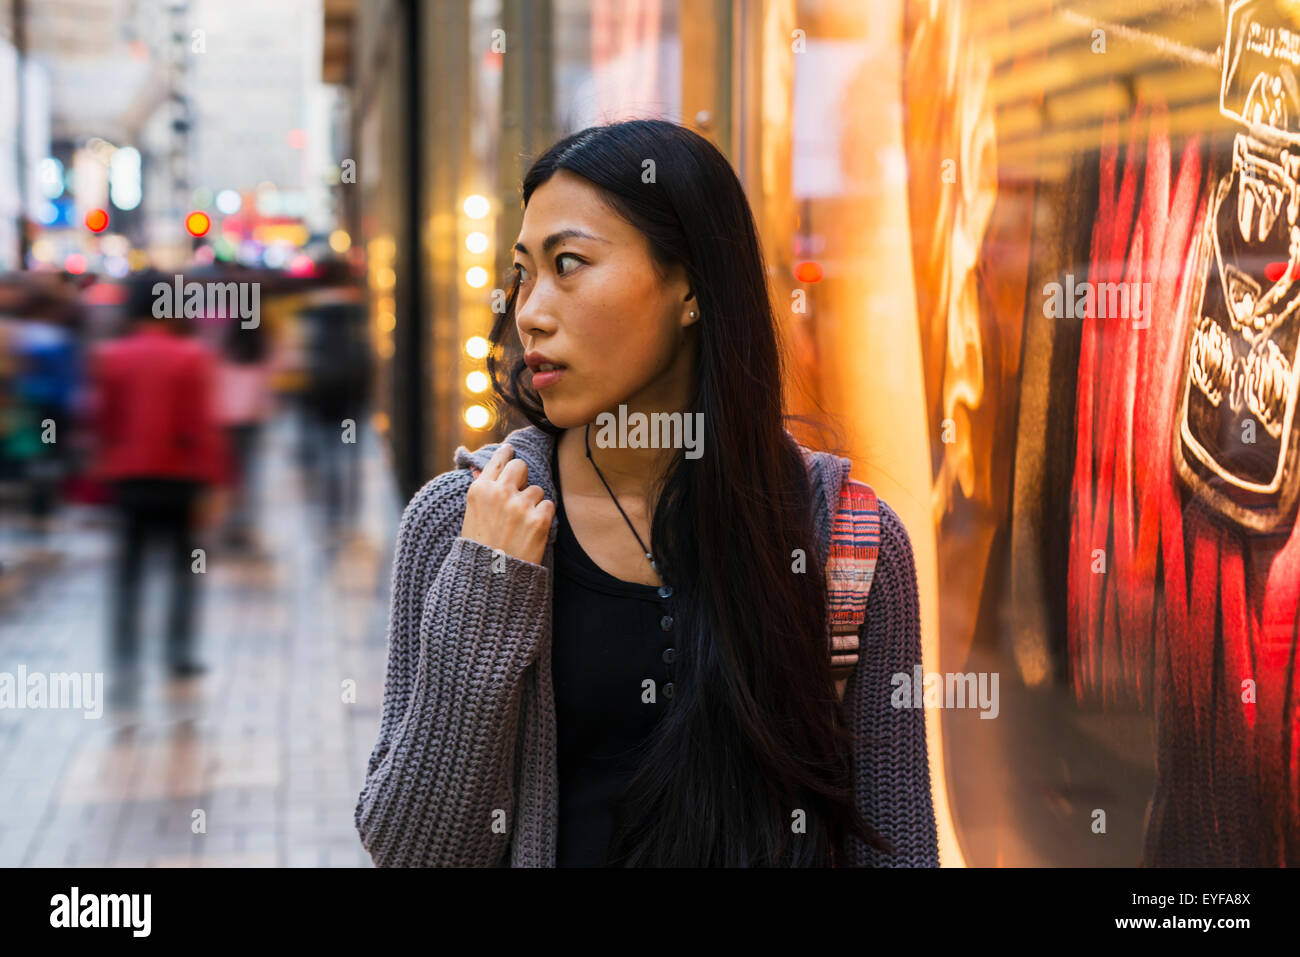 A young woman shopping along the street, Kowloon; Hong Kong, China Stock Photo